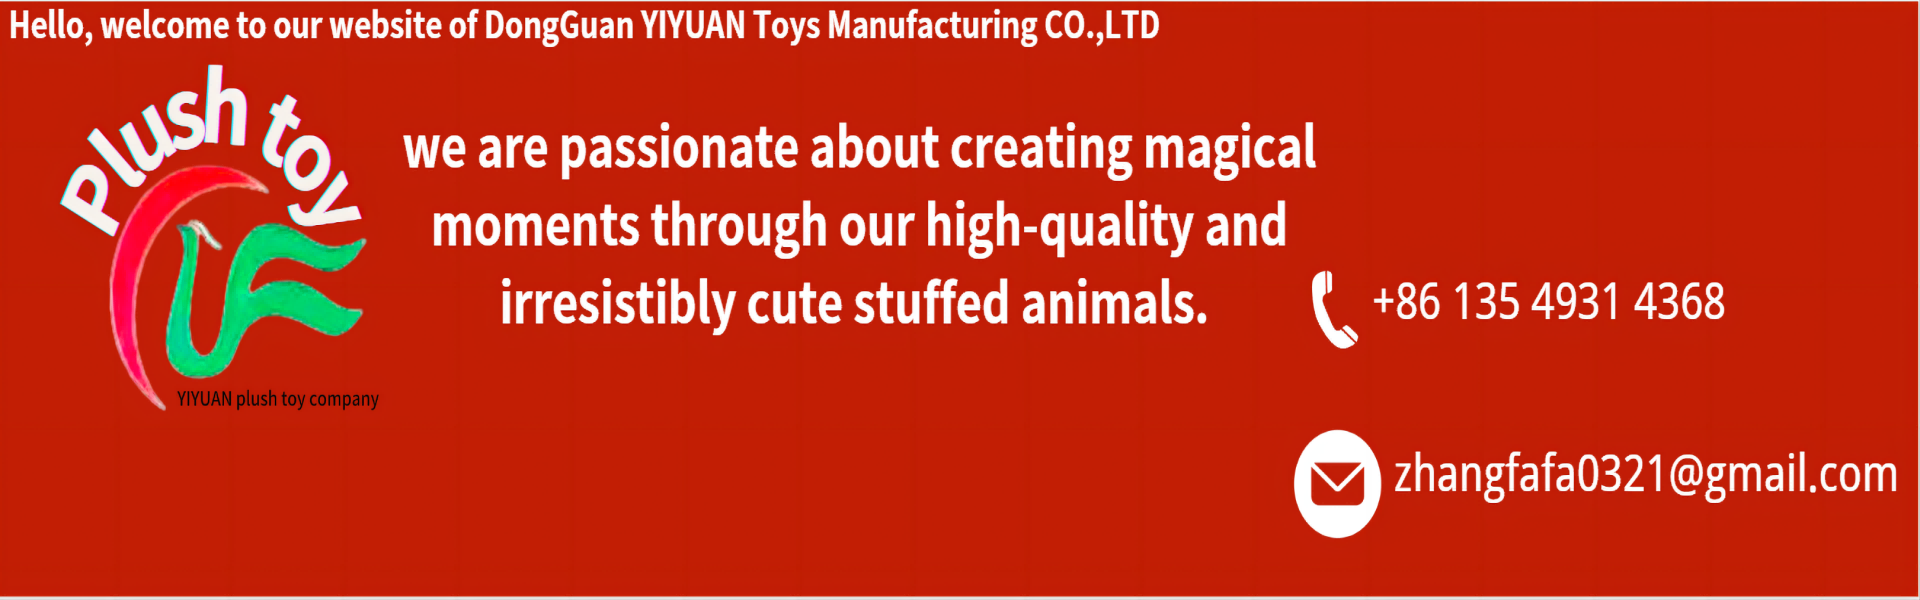 Pluszowa zabawka, wysokiej jakości, profesjonalne zespoły,yiyuan plush toy company